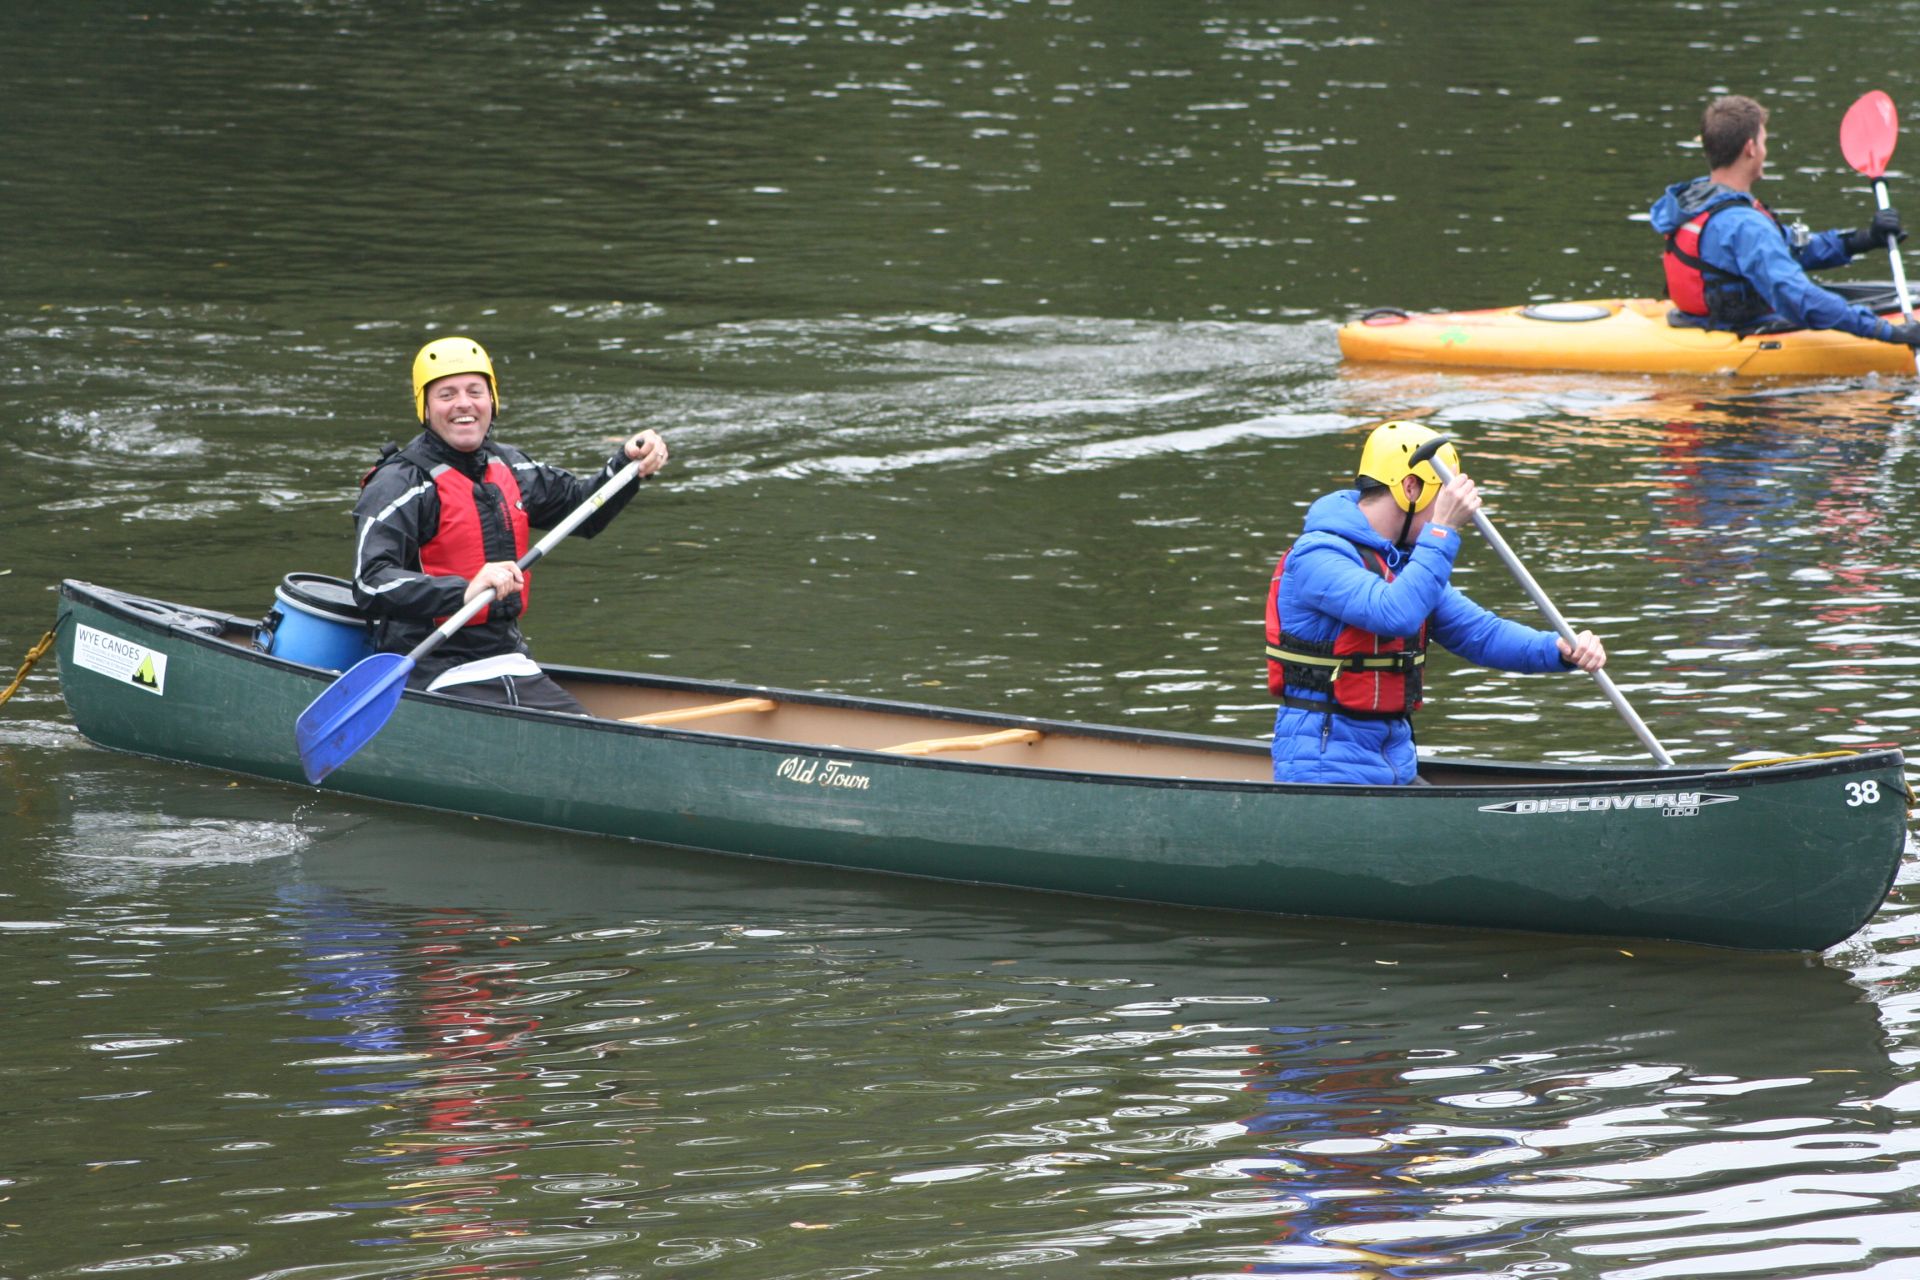 Canoeing Intro